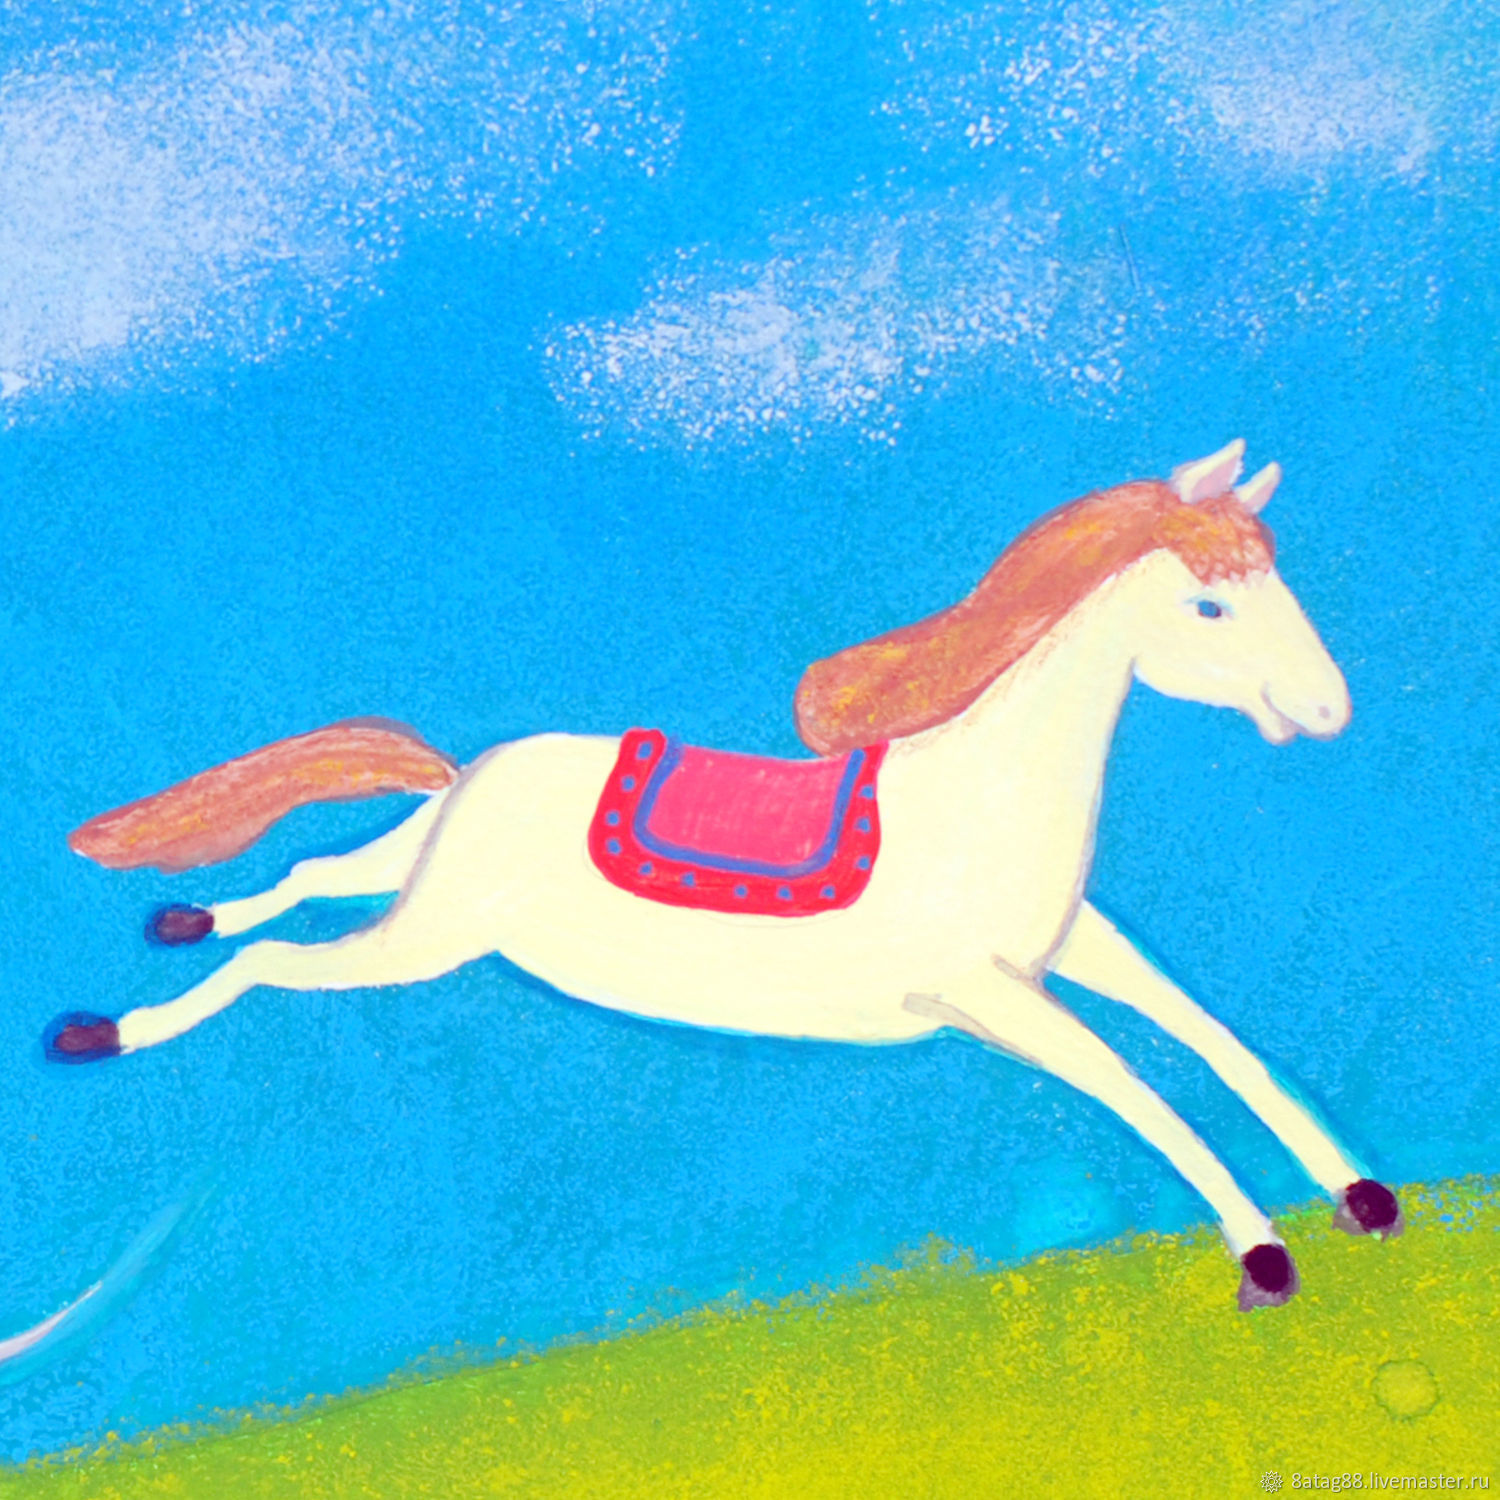 Иллюстрация Одна лошадка белая для детской комнаты, Иллюстрации, Москва,  Фото №1